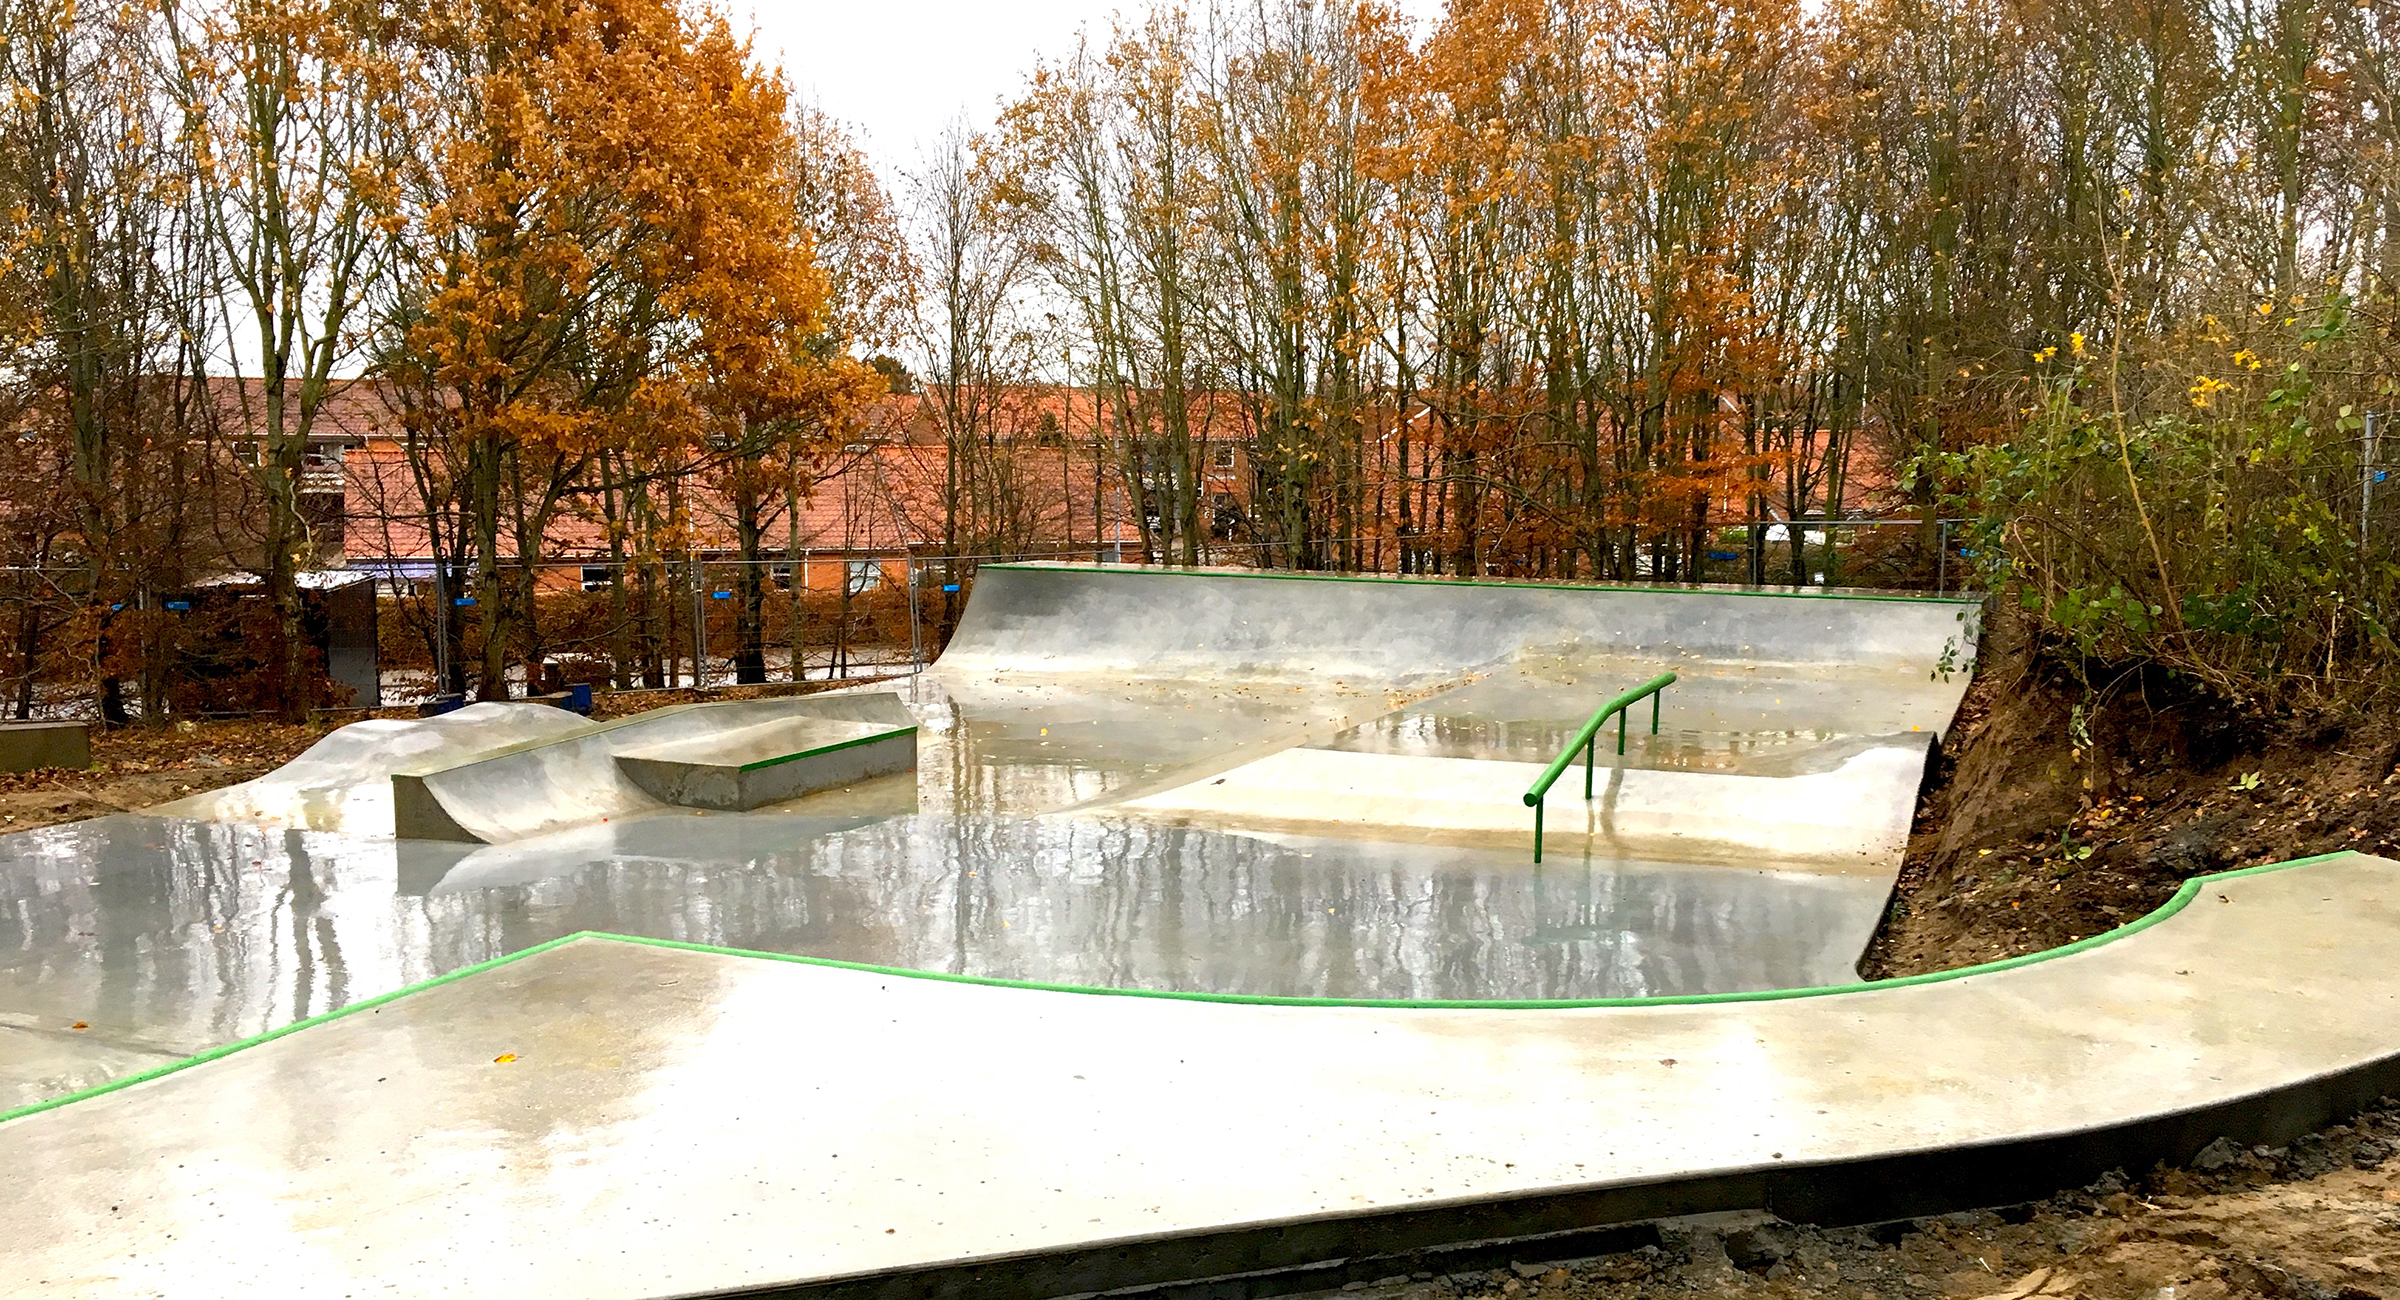 Billedet viser en lille skatepark i beton med grønne metalelementer